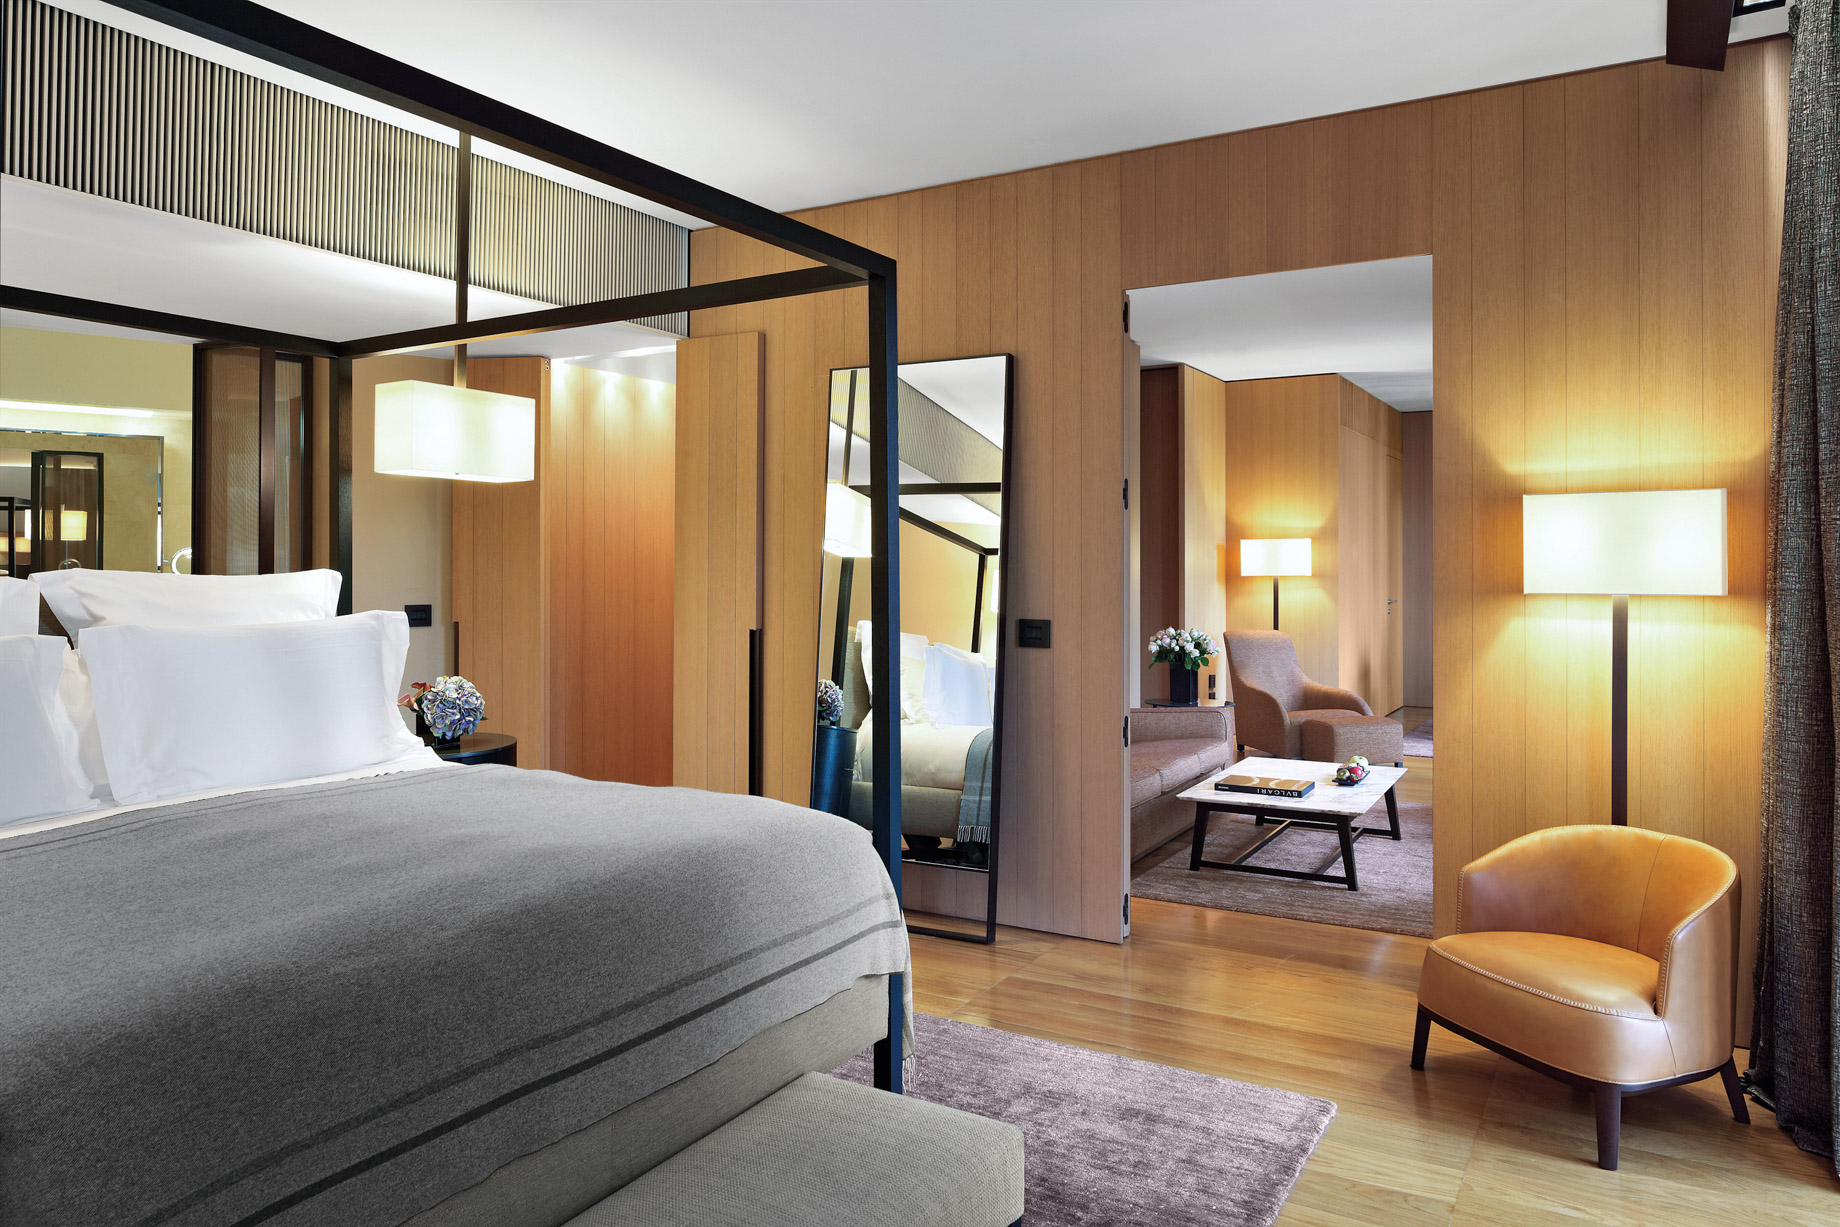 Bvlgari Hotel Milano – Milan, Italy – Premium Suite Bedroom